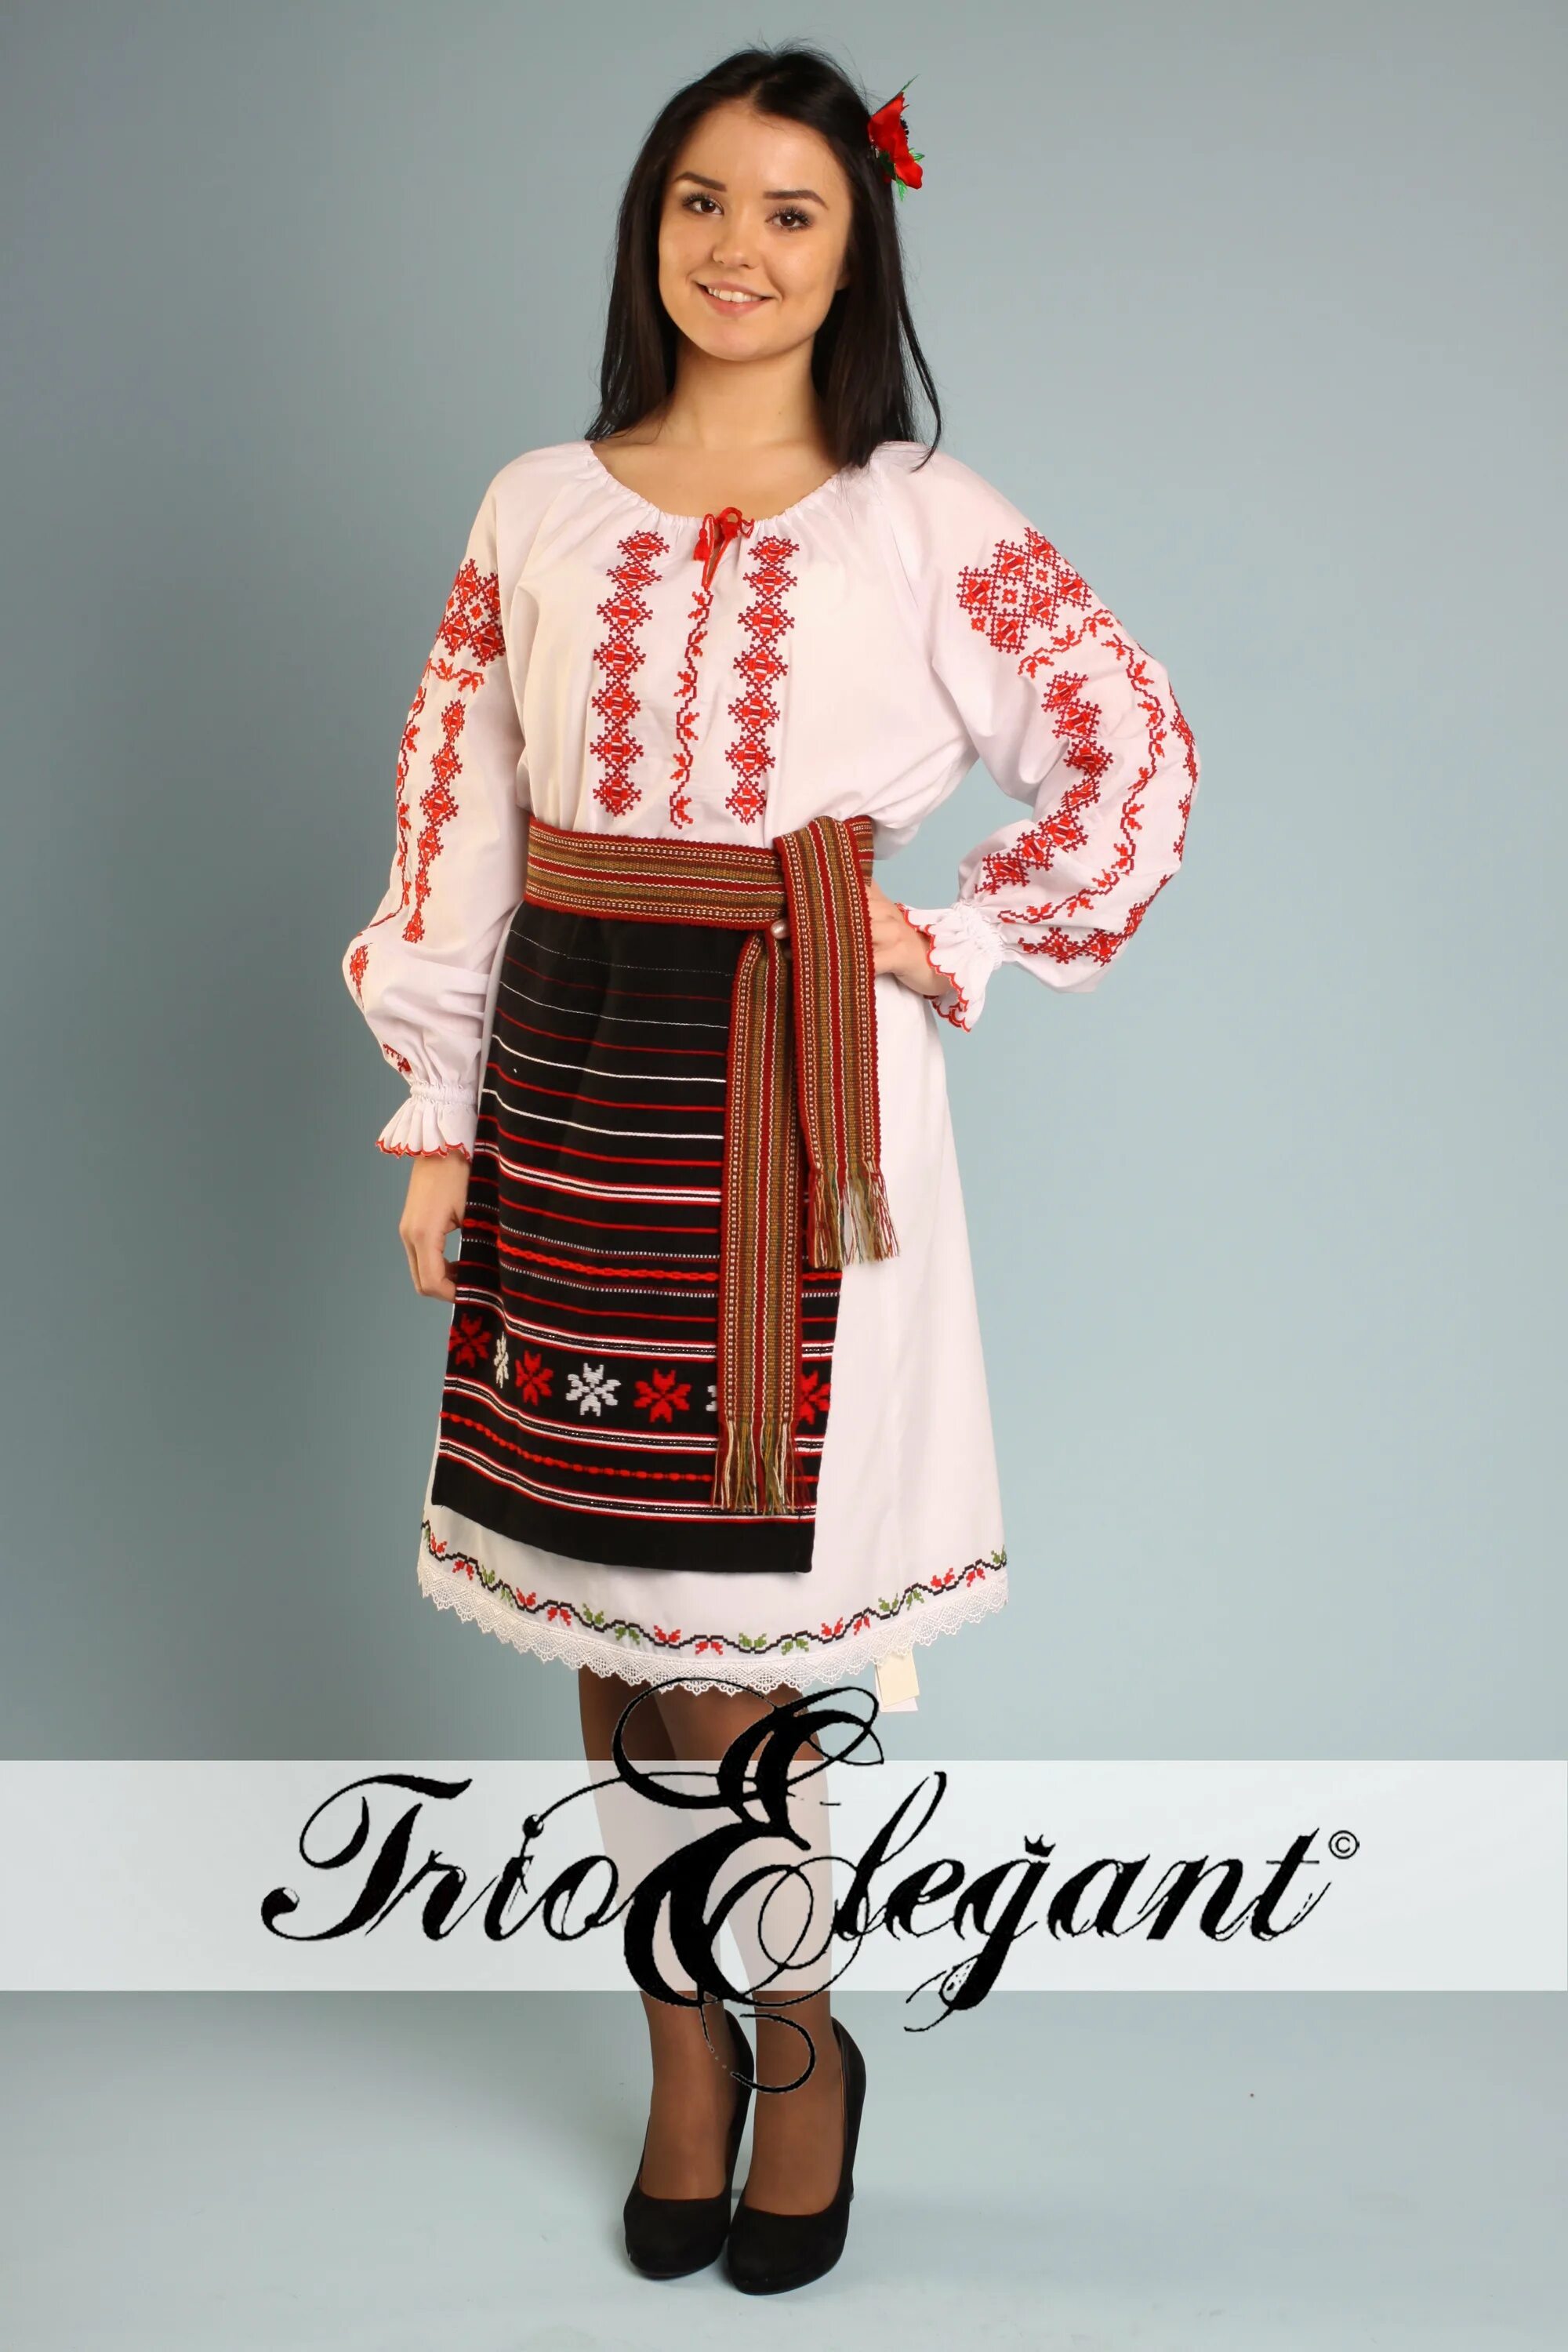 Молдаван женщина. Костюм Националь Молдовенеск. Молдаване национальный костюм. Национальный костюм молдавского народа. Национальный костюм Молдован.